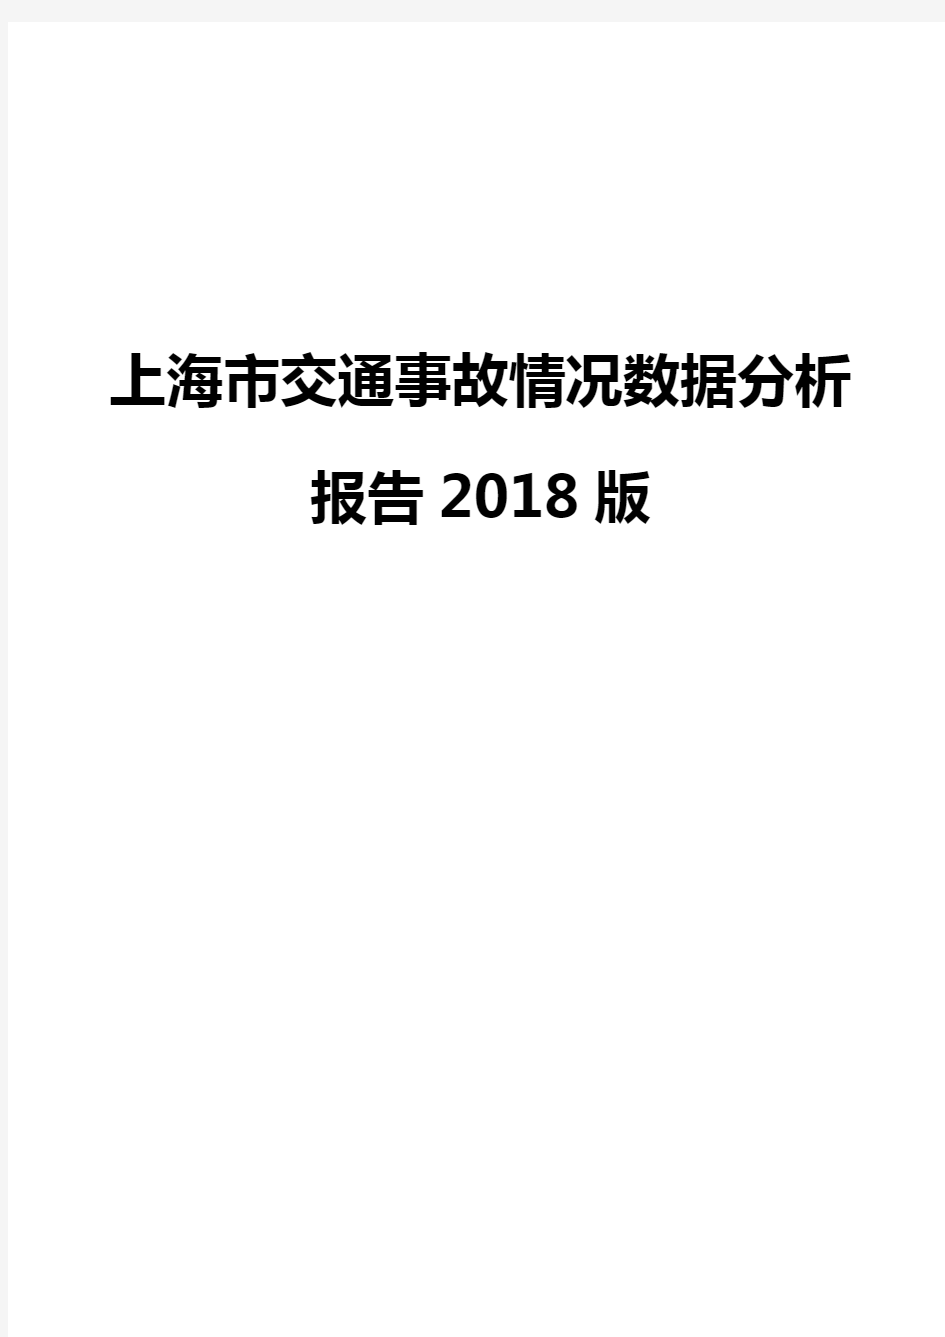 上海市交通事故情况数据分析报告2018版